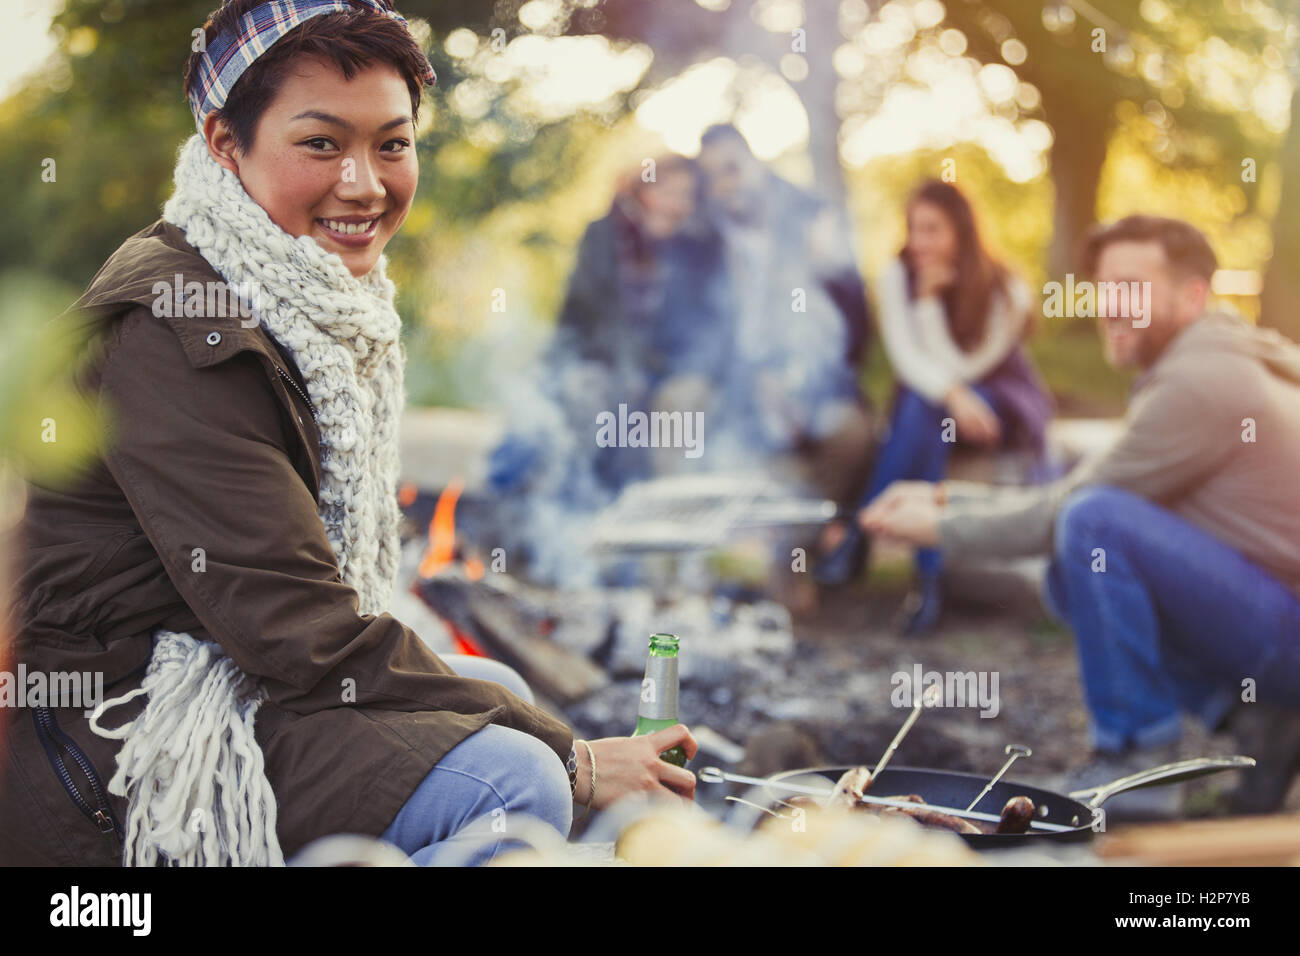 Ritratto di donna sorridente di bere birra con gli amici a fuoco Foto Stock